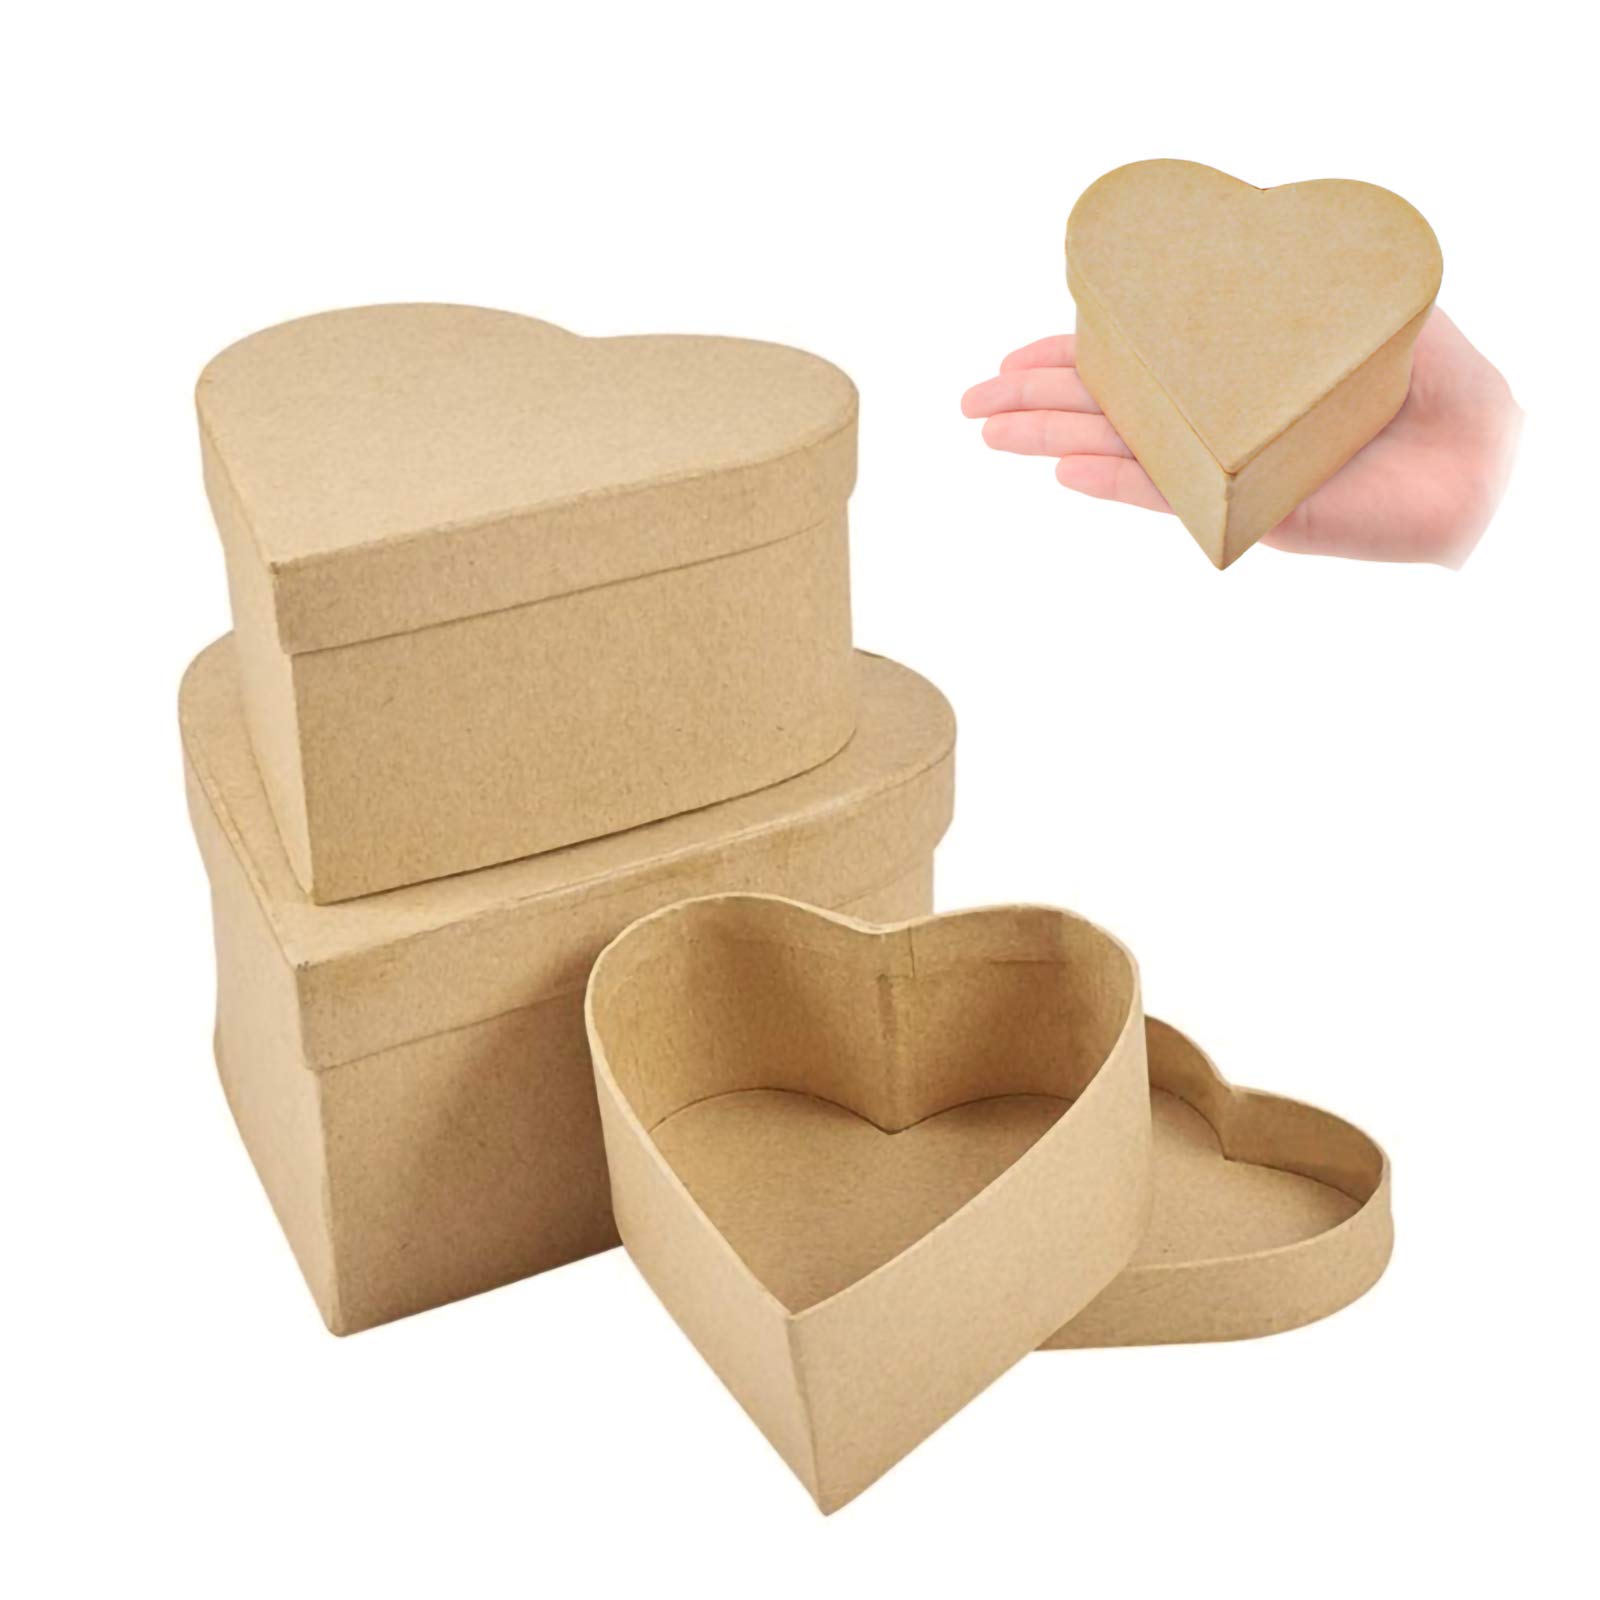 WANDIC Mini Paper Mache Boxes 3Pcs Small Palm-Sized Heart-Shaped